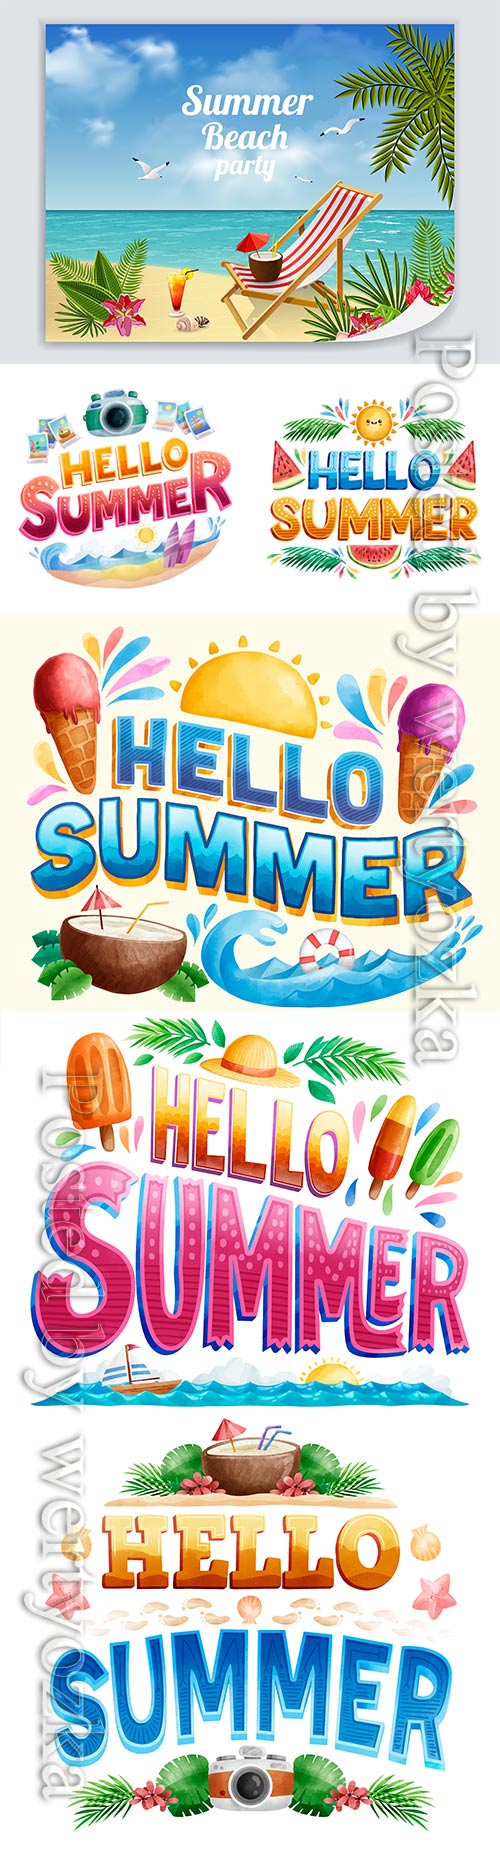 Hello summer vector illustration